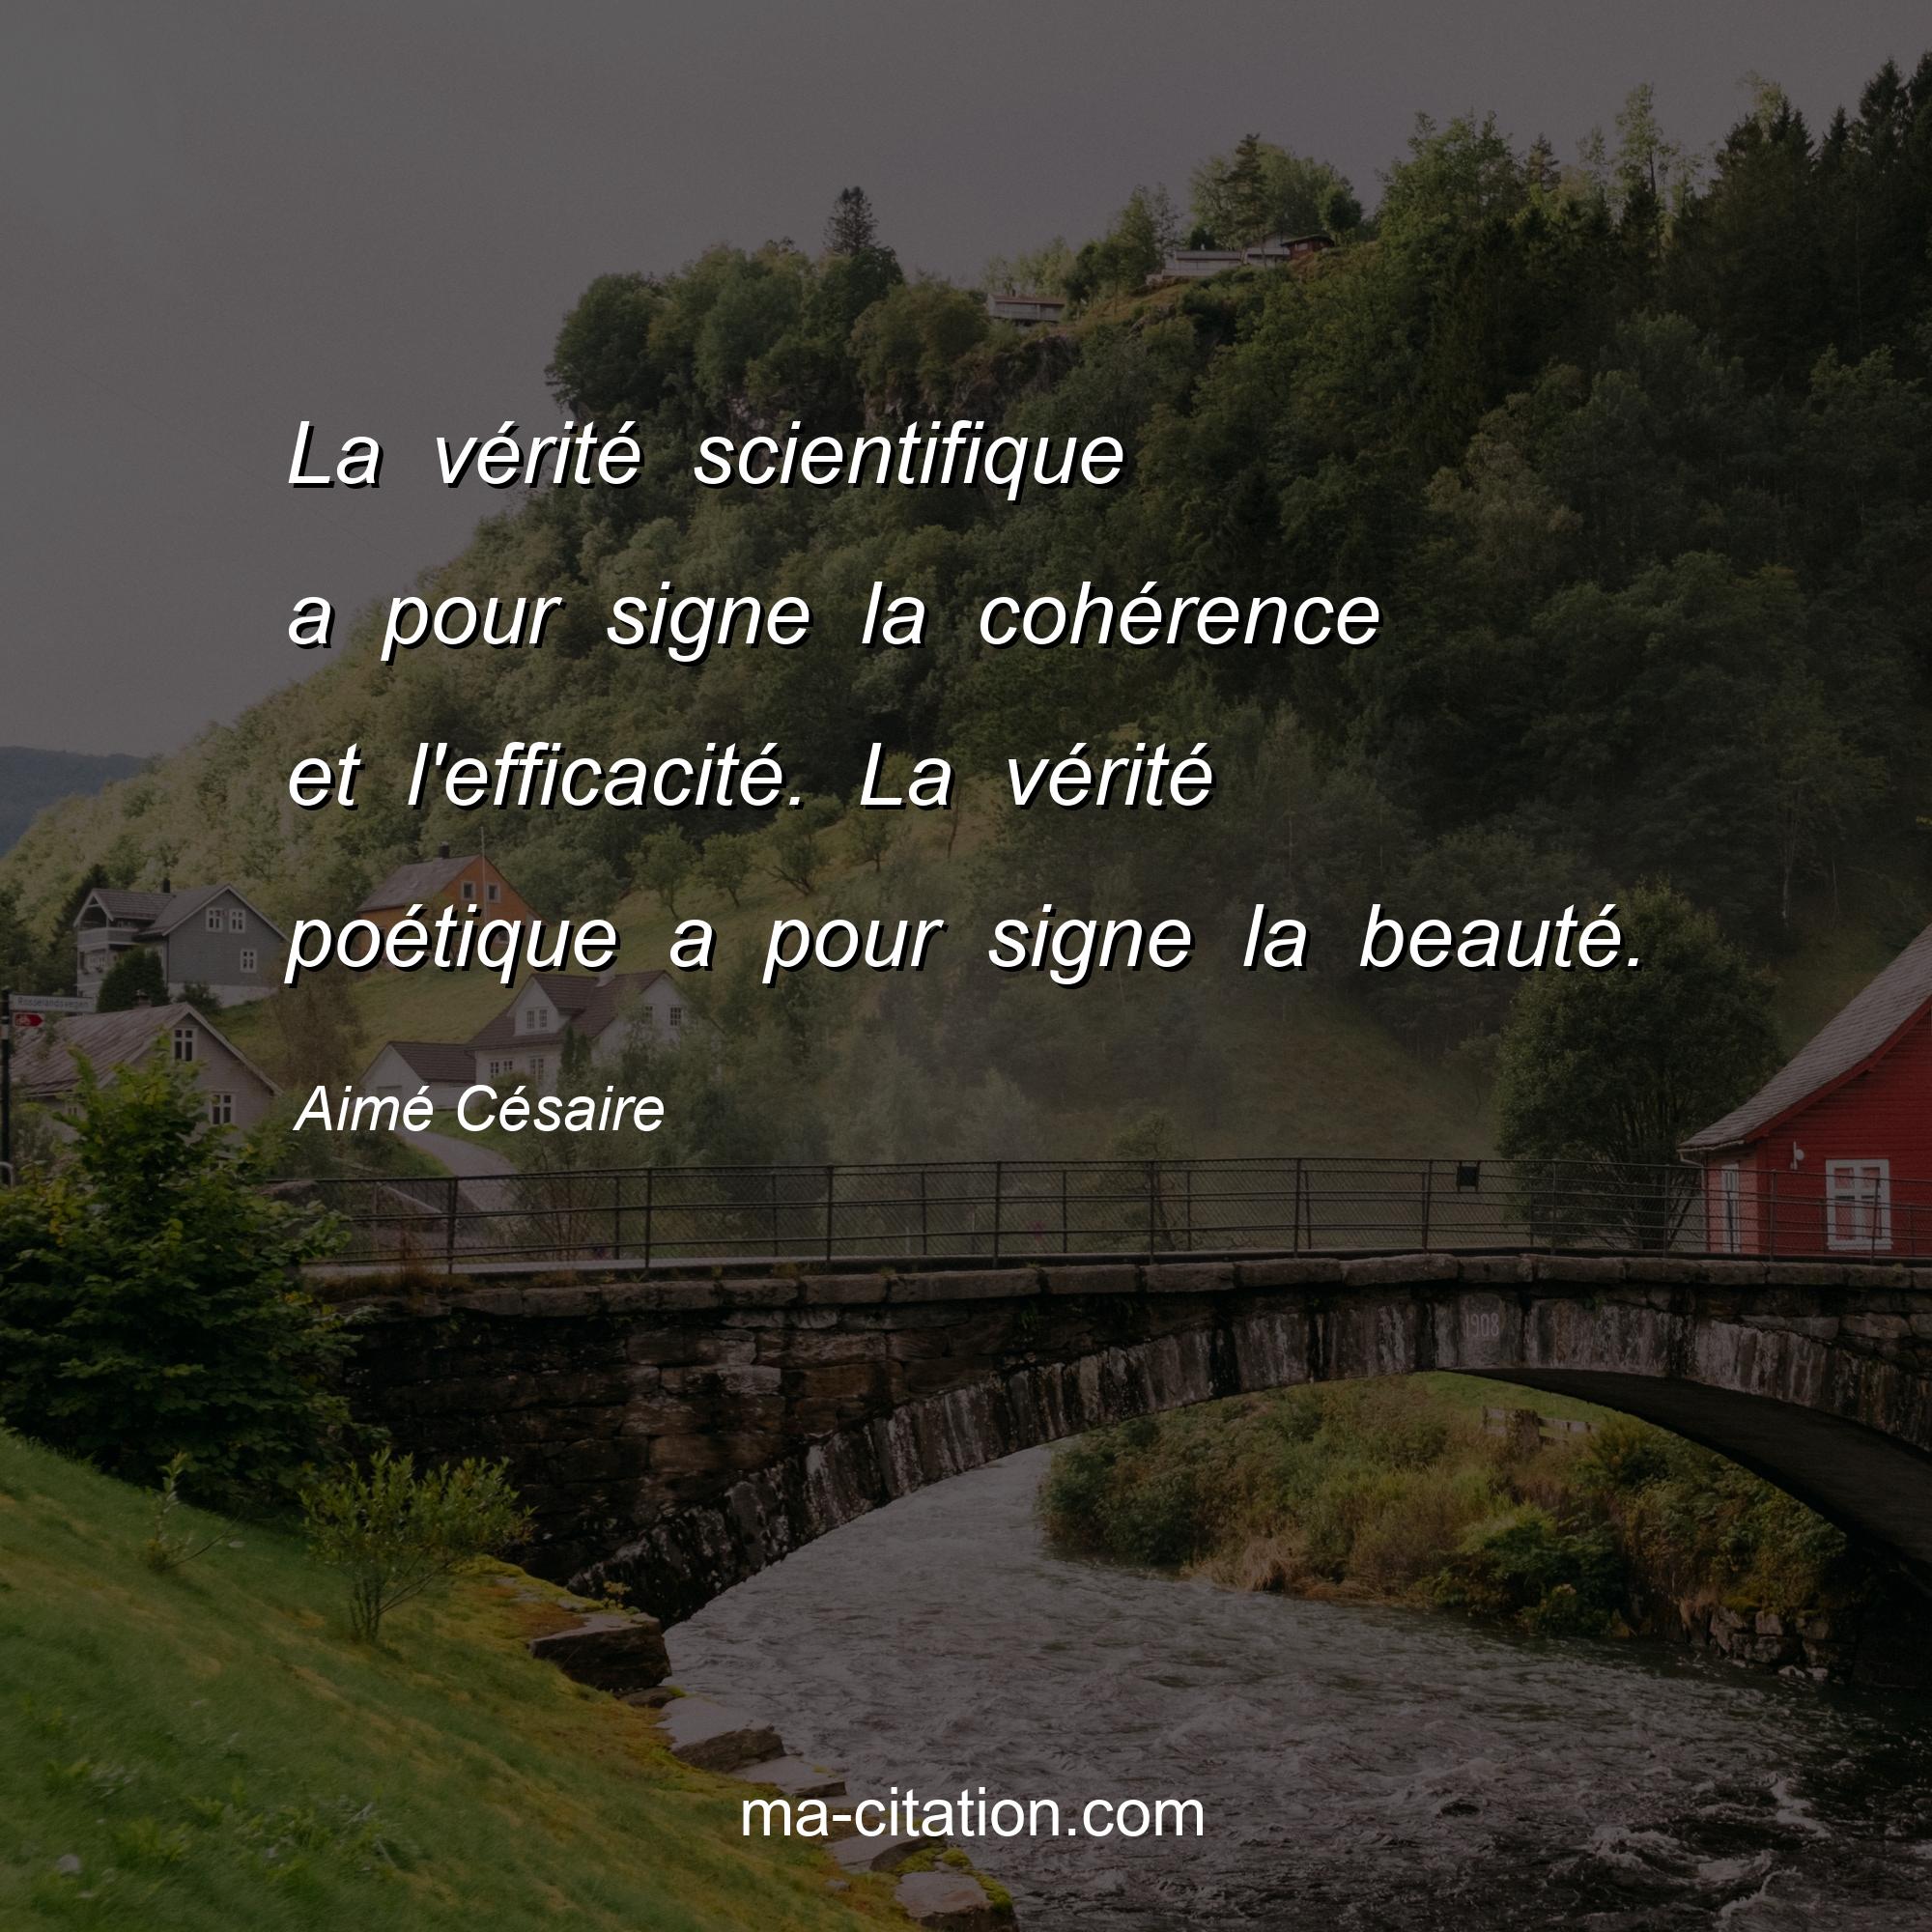 Aimé Césaire : La vérité scientifique a pour signe la cohérence et l'efficacité. La vérité poétique a pour signe la beauté.